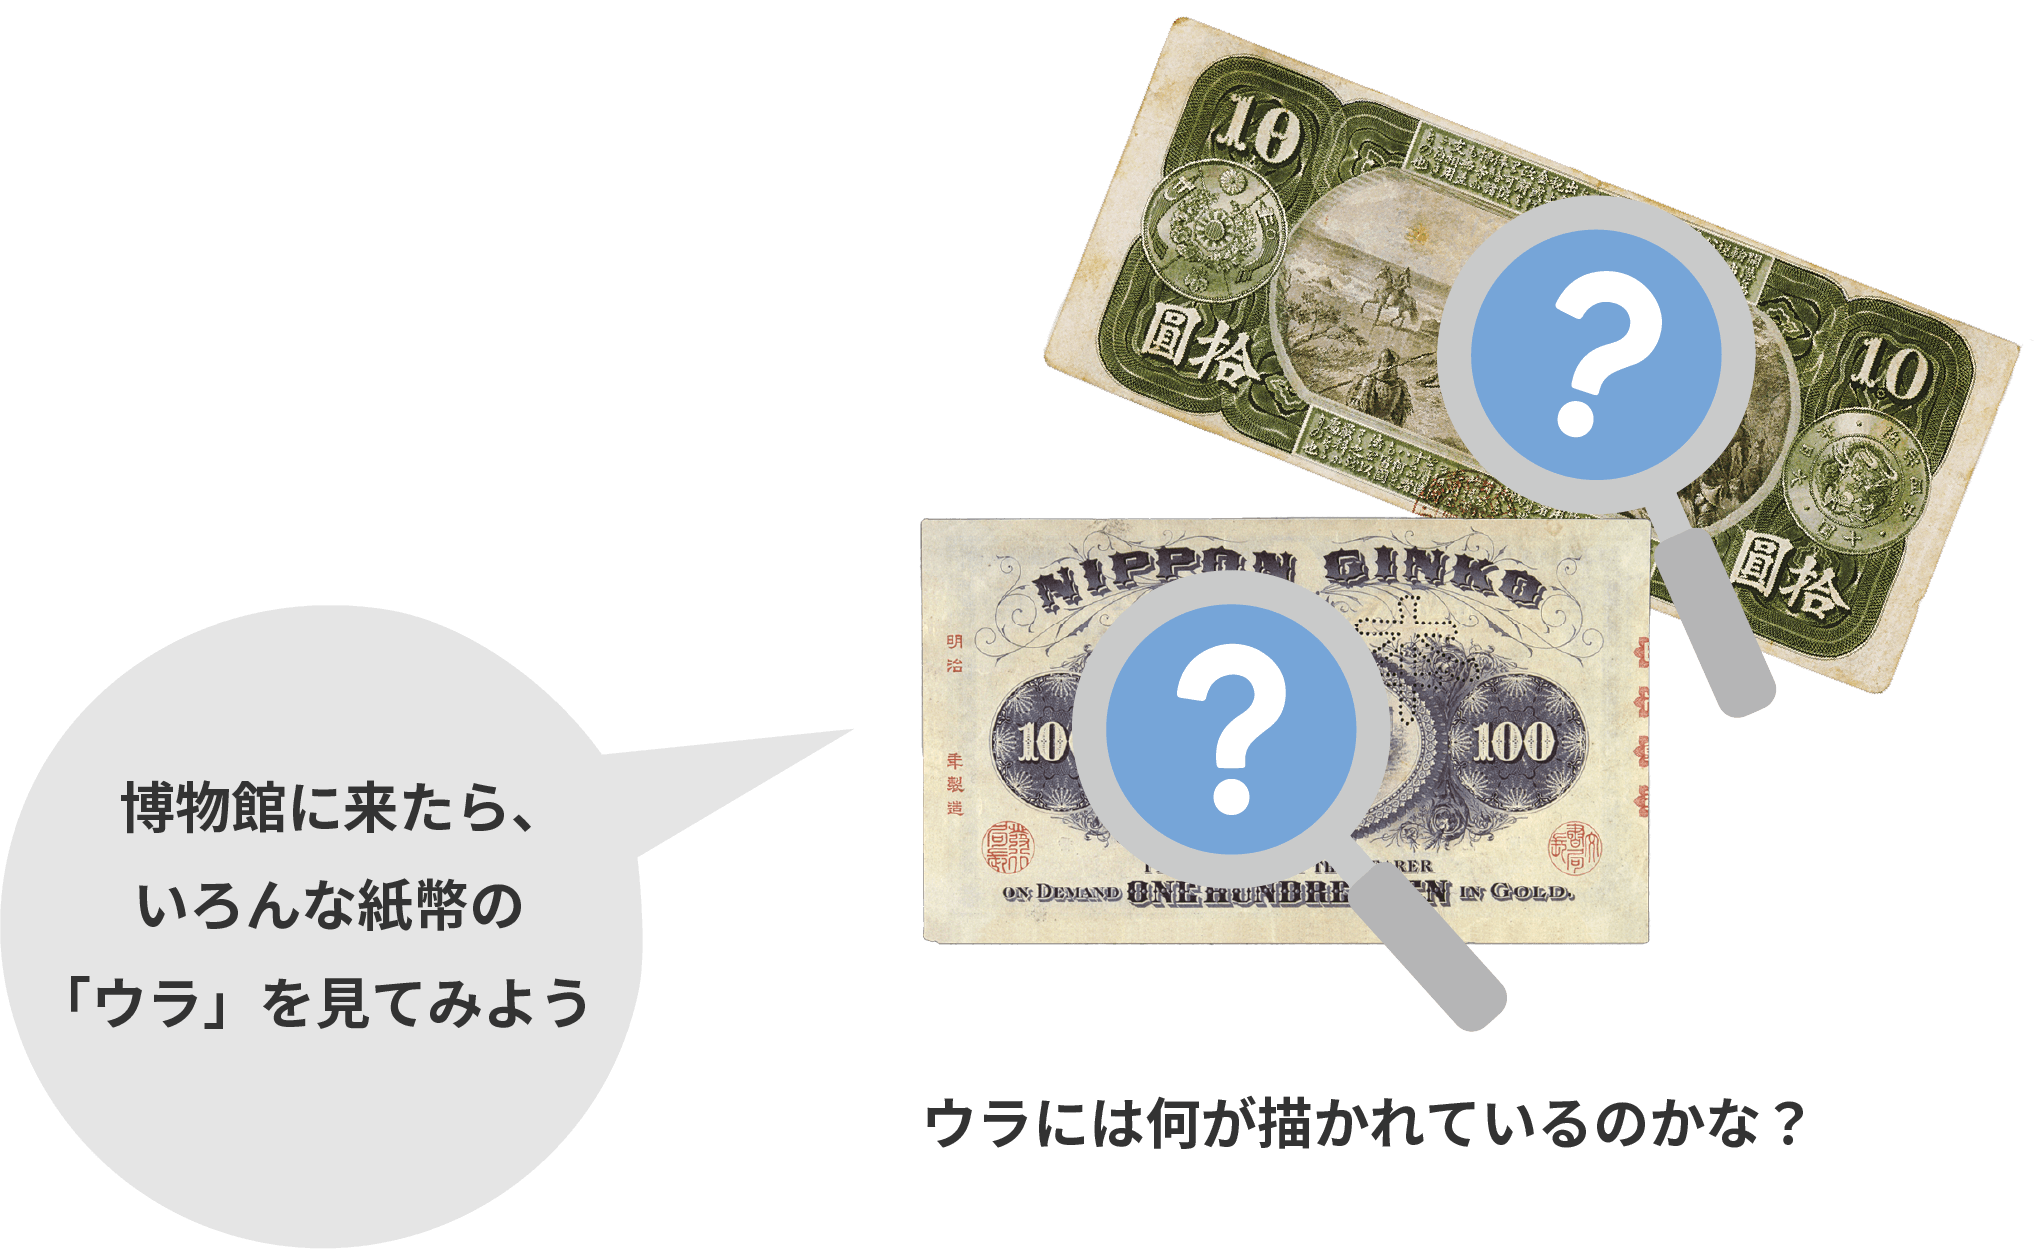 お金の歴史に関するFAQ - 貨幣博物館